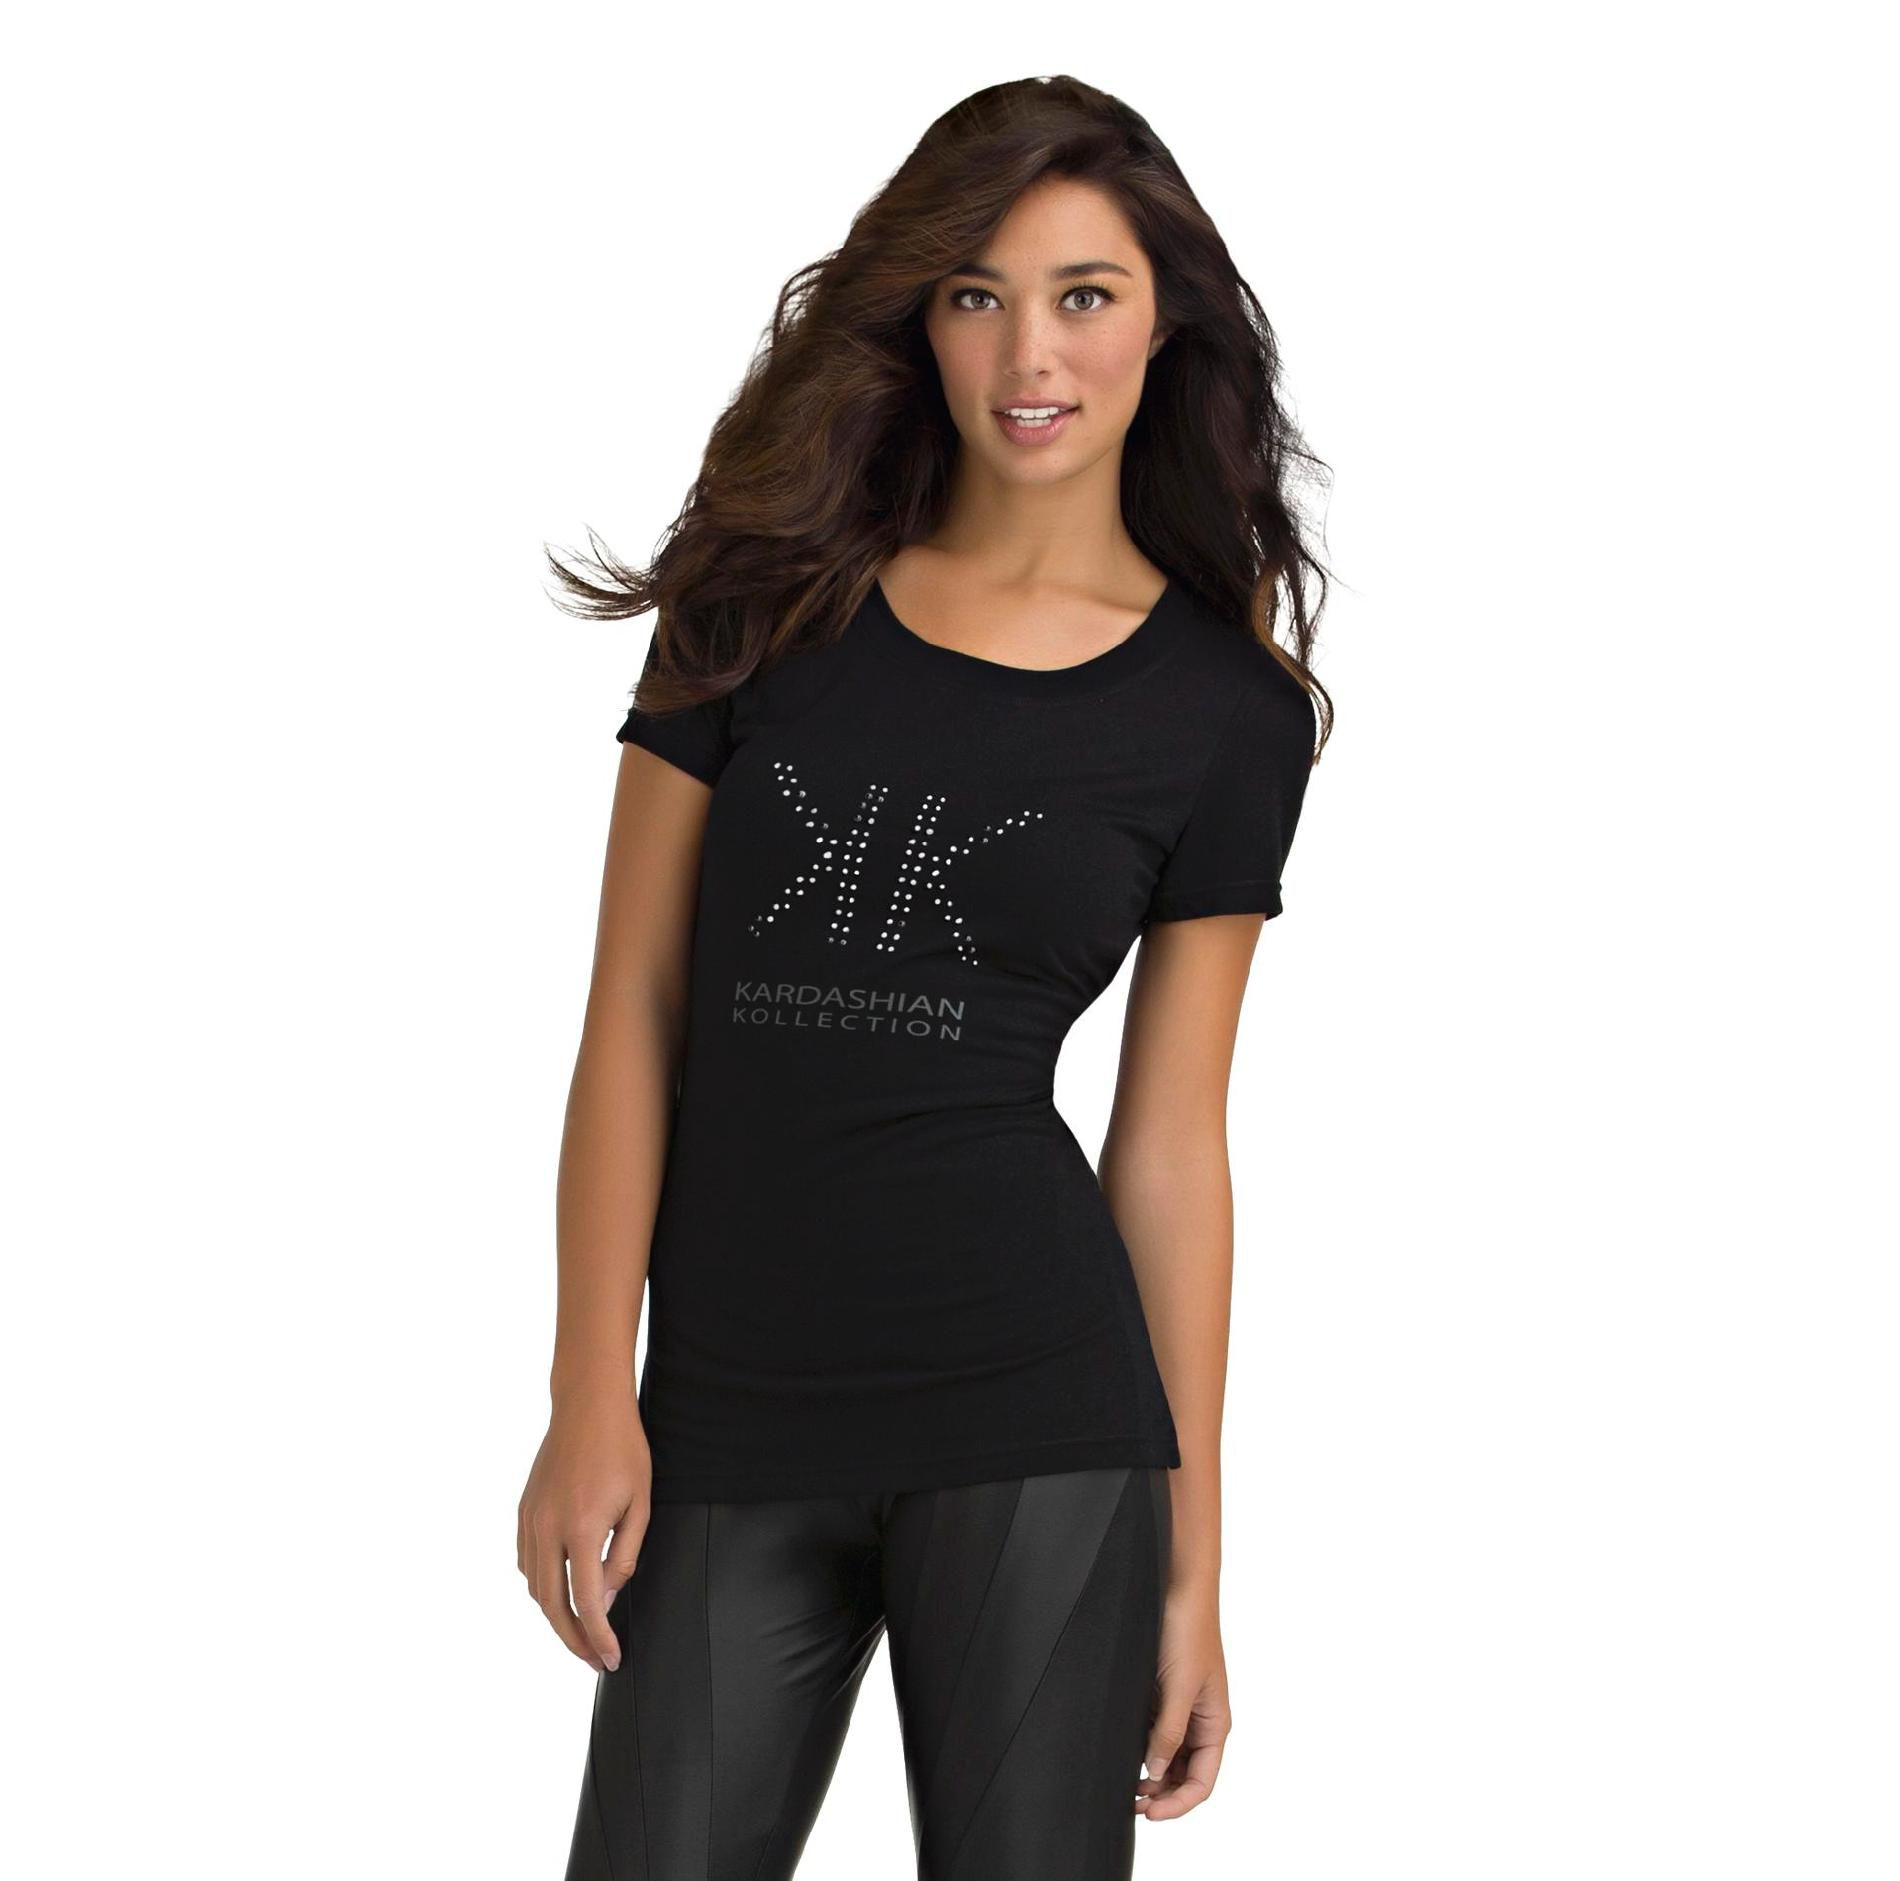 Kardashian Kollection Women's Sequin Logo T-Shirt